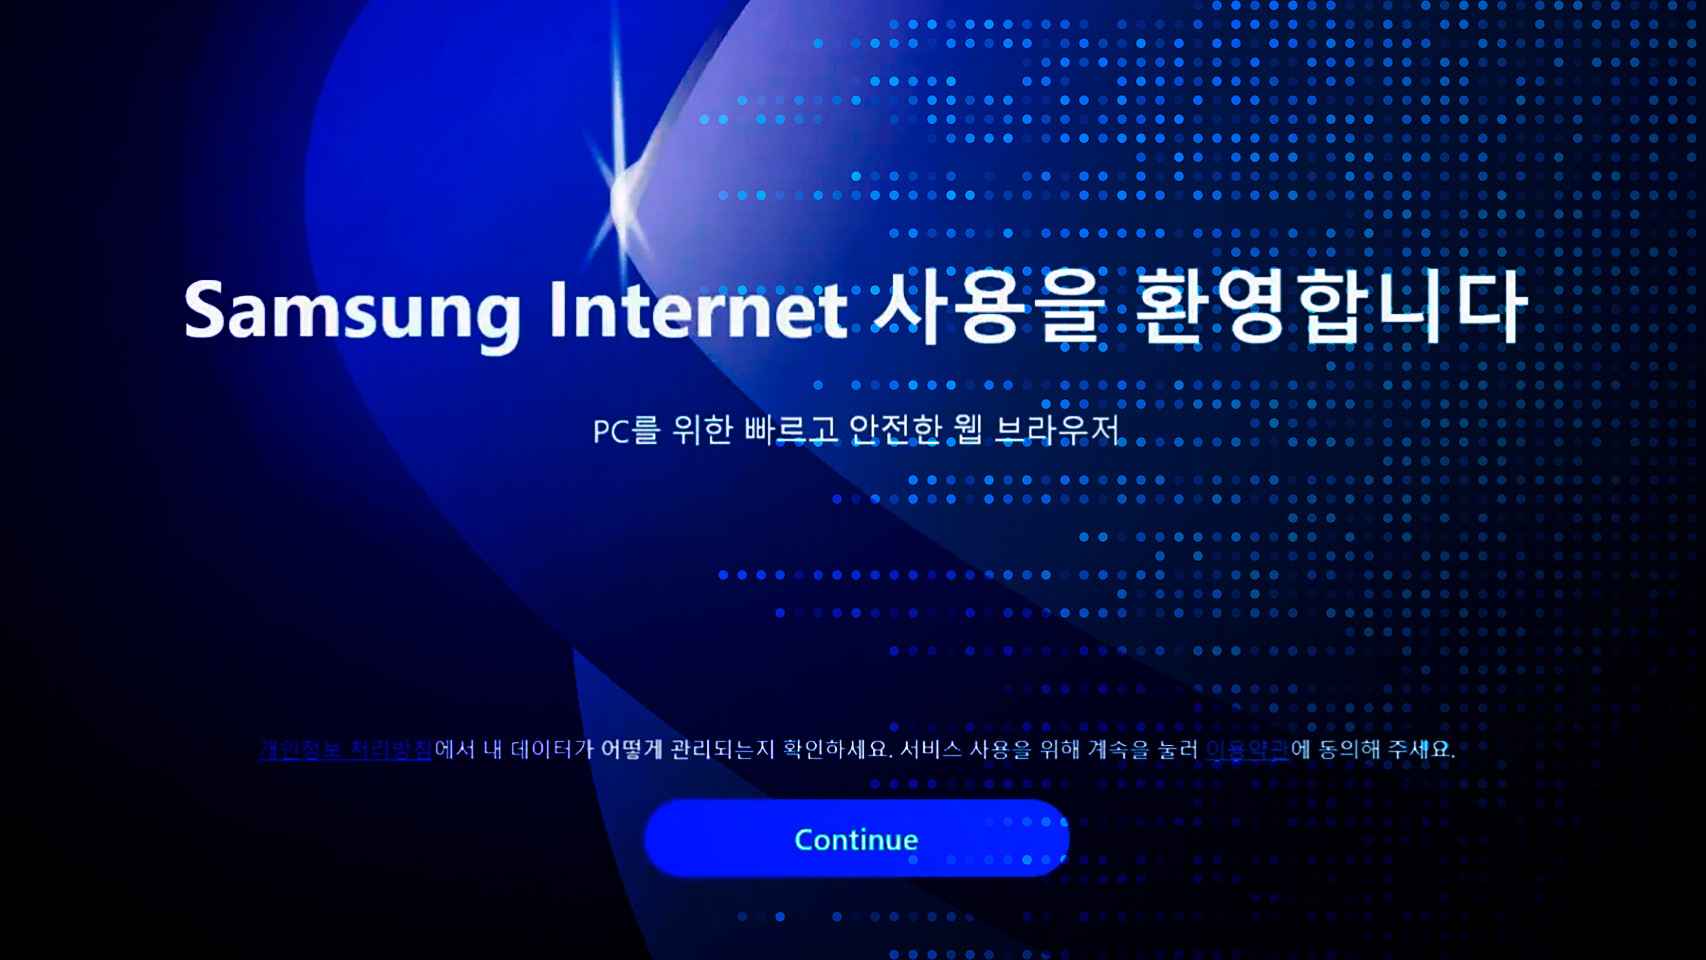 Windows ya tiene otro navegador, Samsung Internet